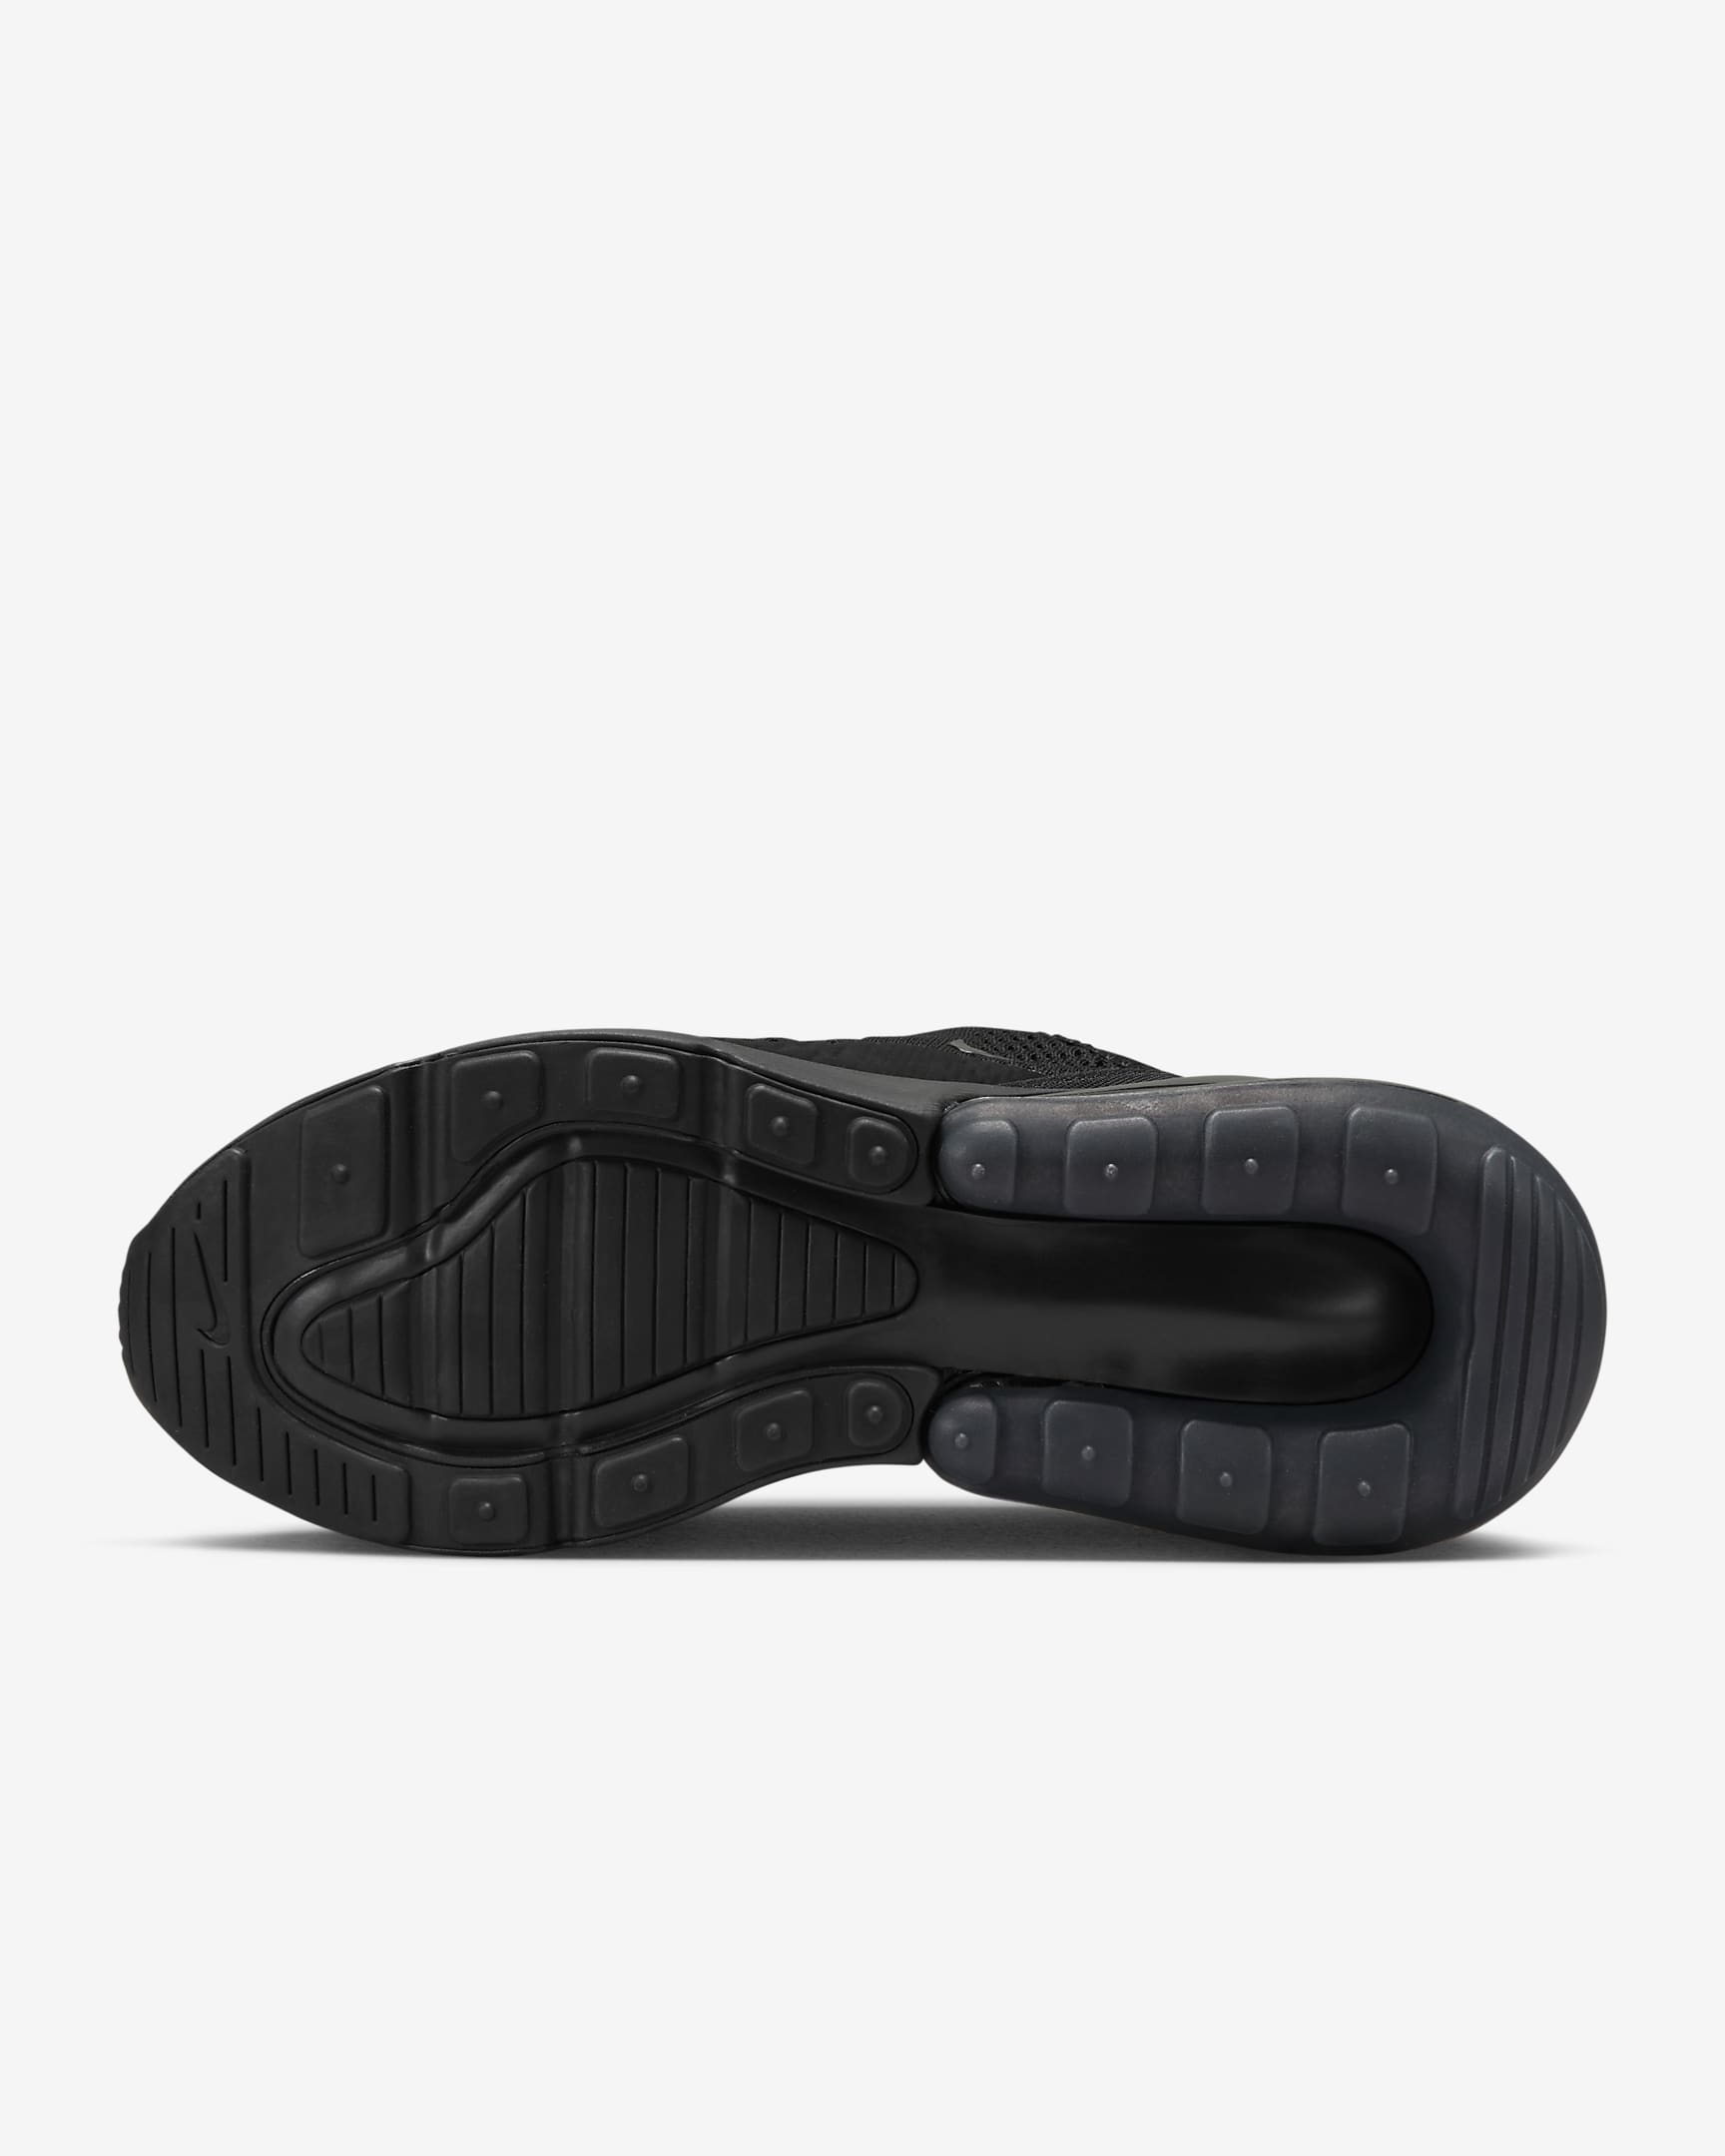 Chaussure Nike Air Max 270 pour femme - Noir/Noir/Noir